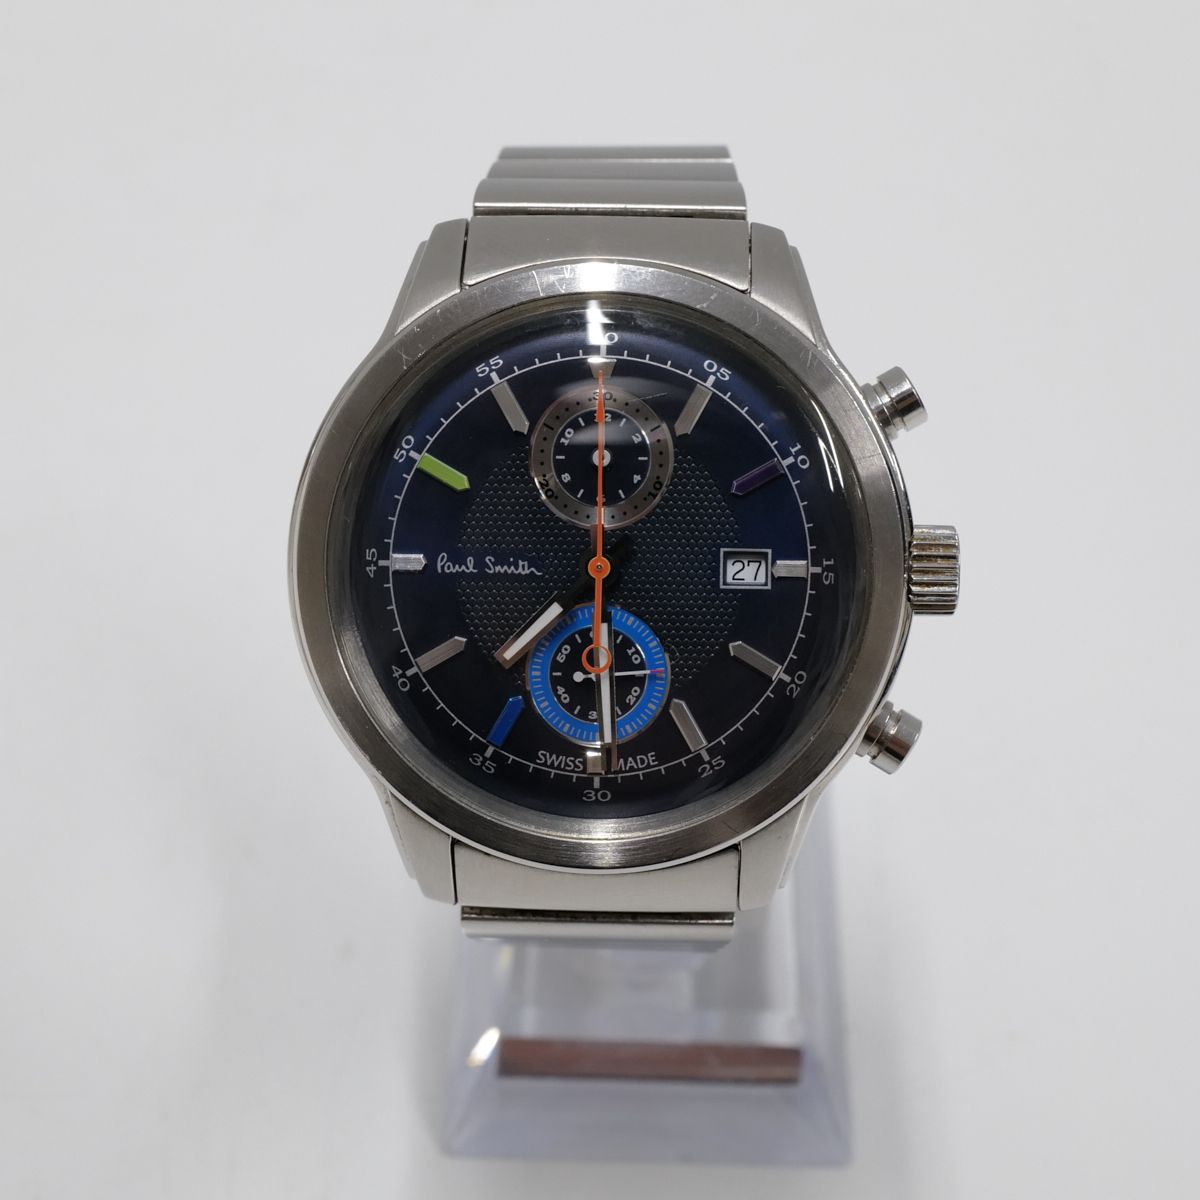 Paul Smith ポールスミス ケンブリッジ メンズ 腕時計 USED美品 SS クロノグラフ カレンダー ウォッチ スイス製 完動品 中古  X5134